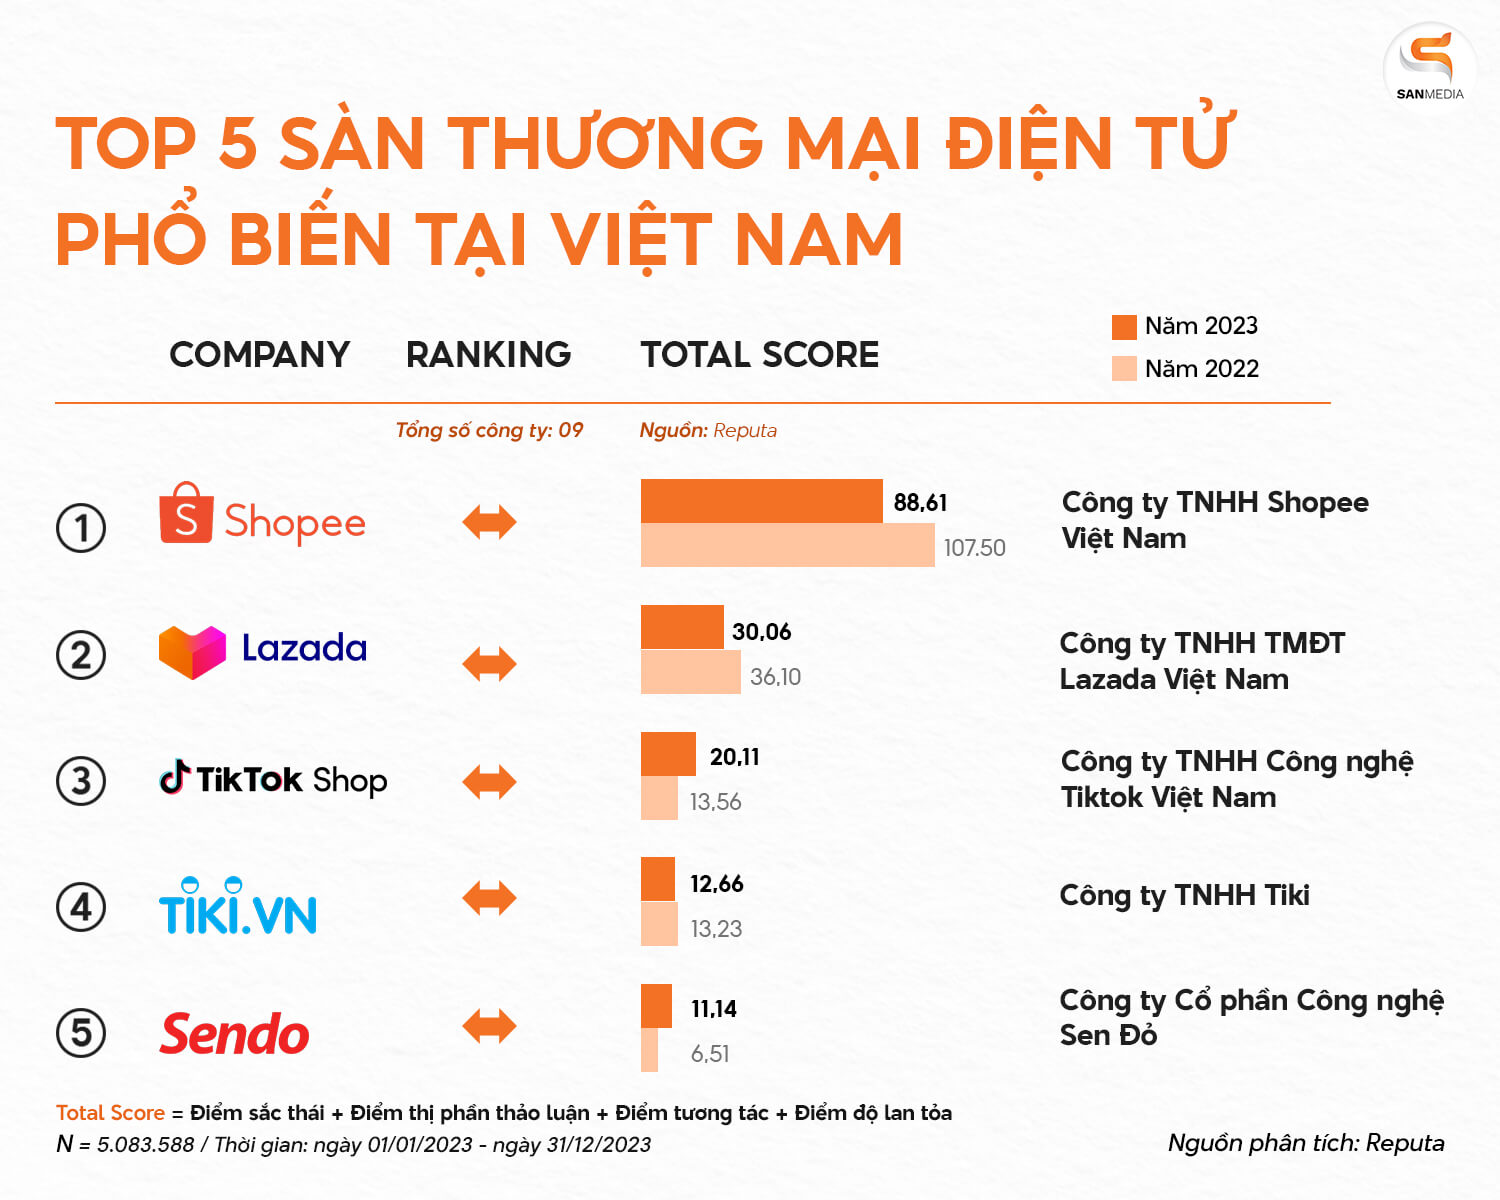 Top 5 sàn TMĐT phổ biến tại Việt Nam